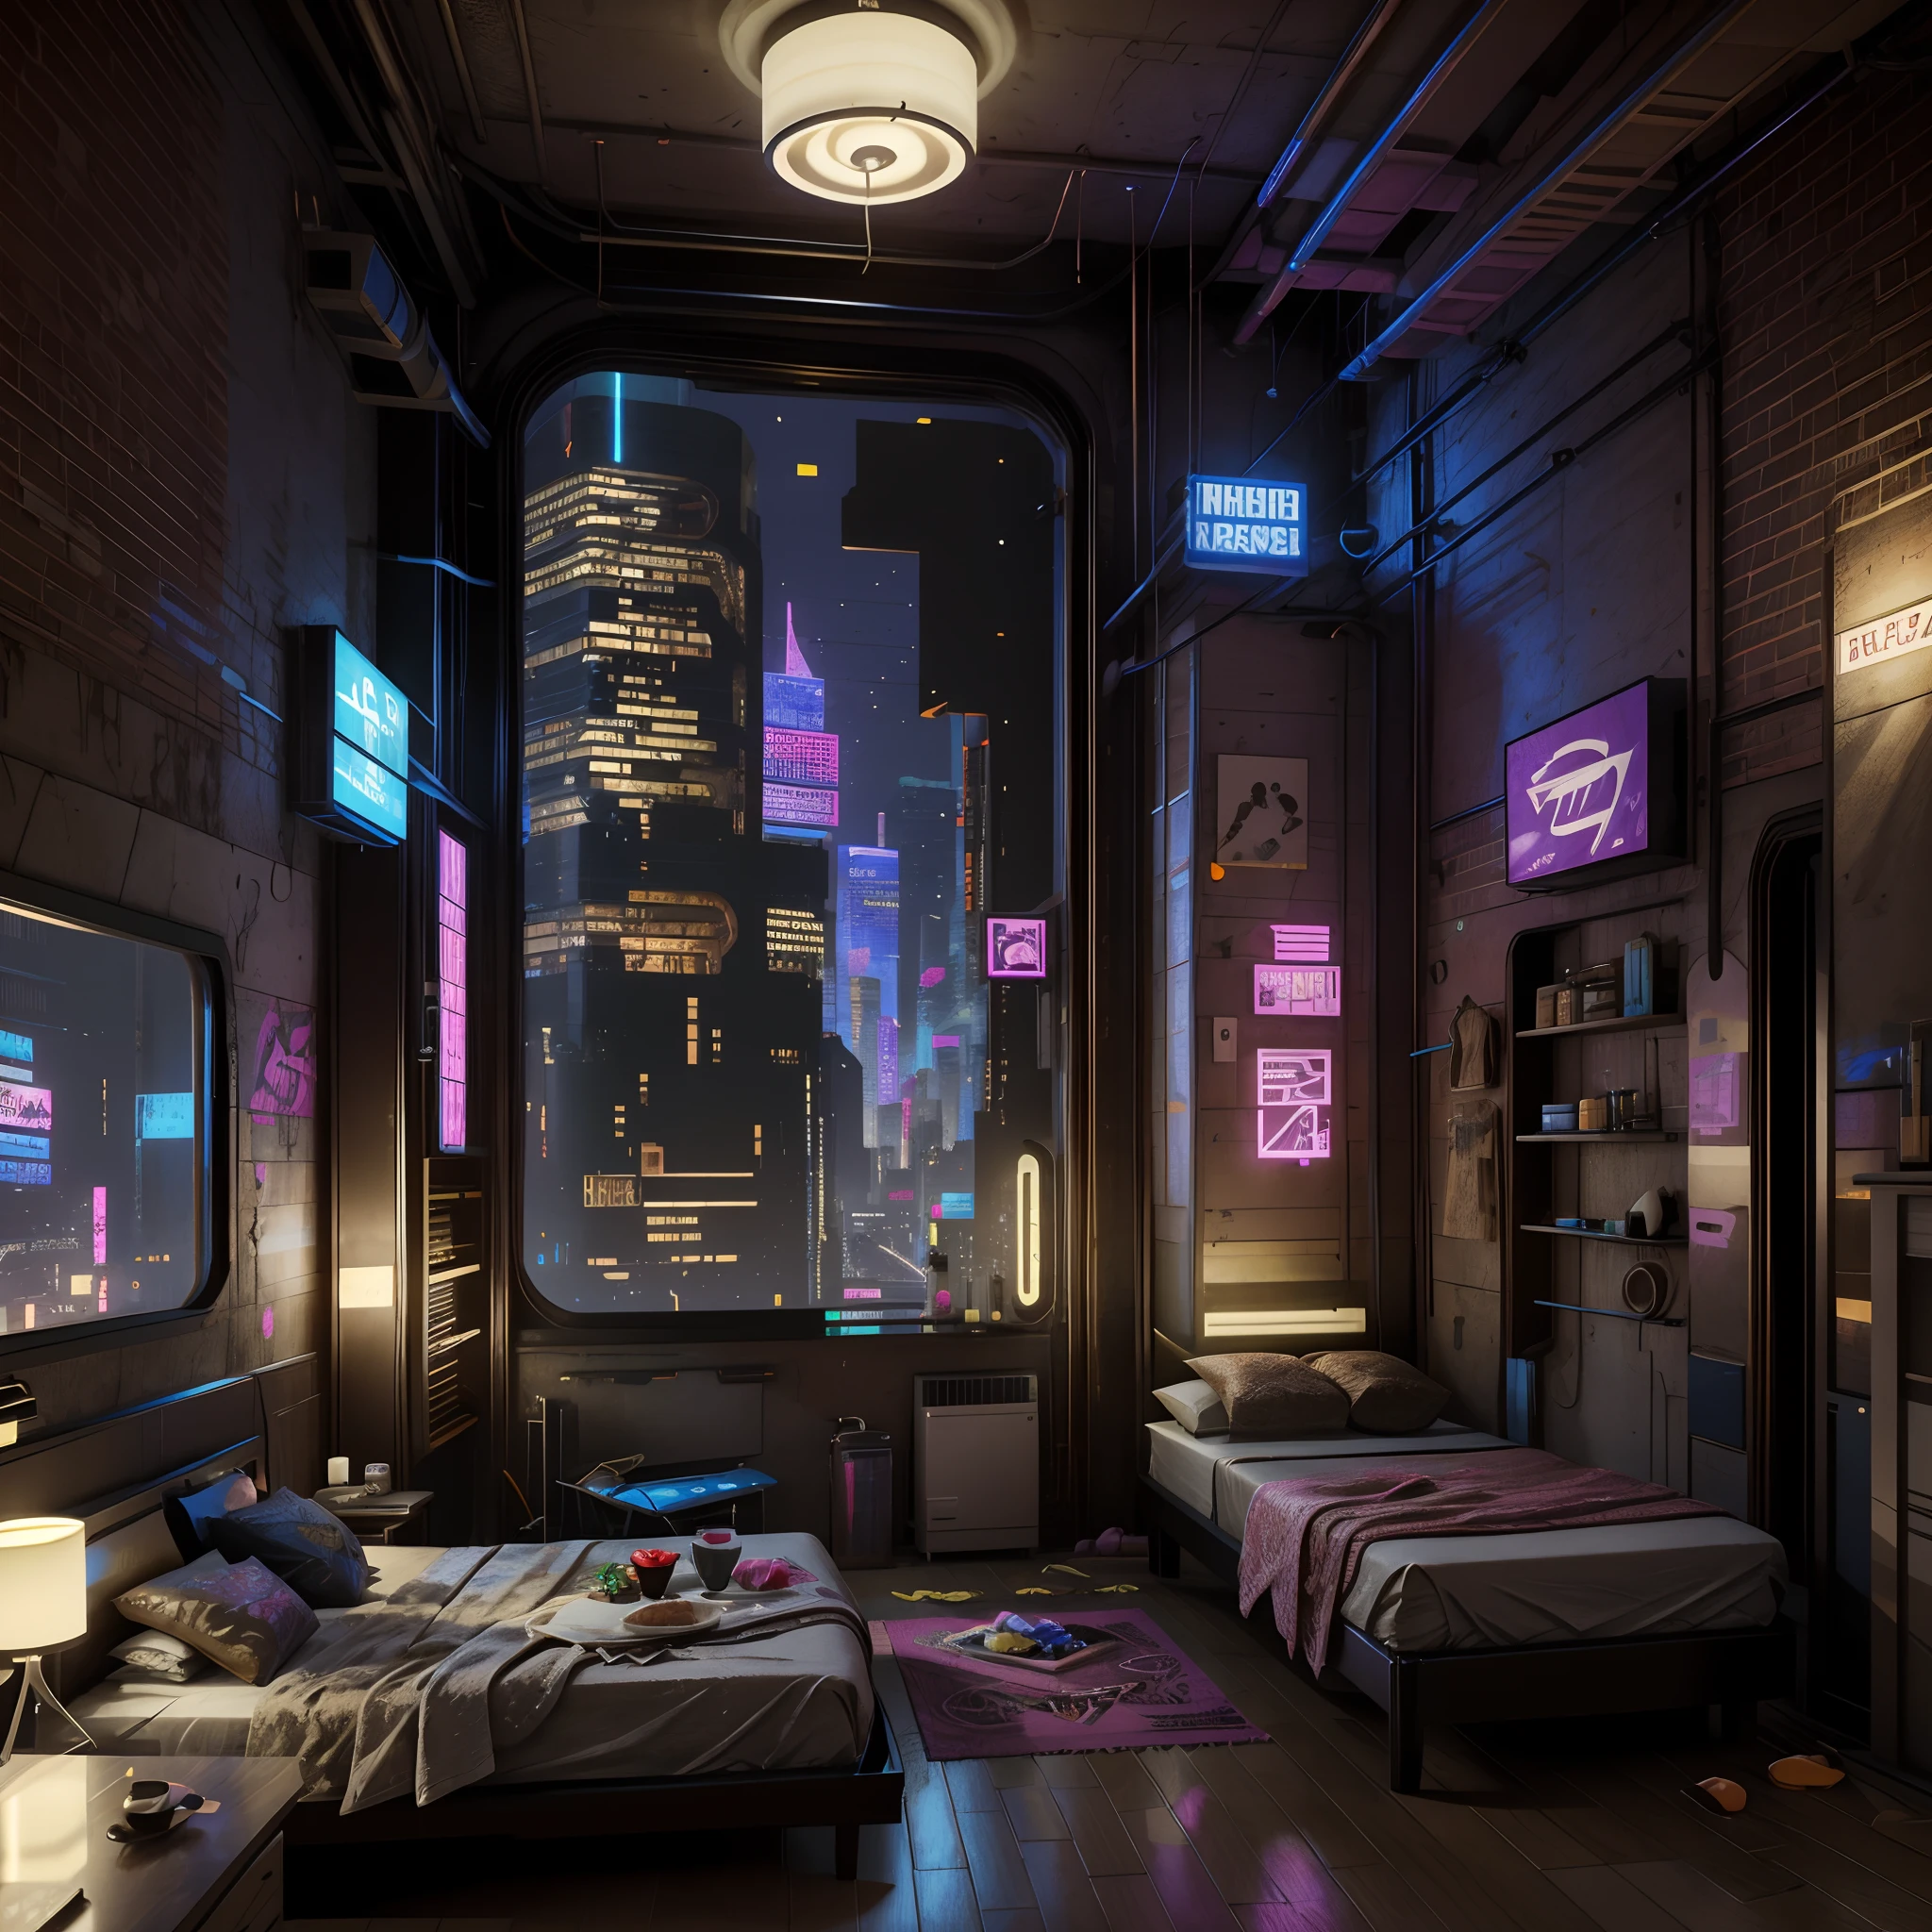 This is a cyberpunk fantasy image. Erstellen Sie ein gemütliches Schlafzimmer inmitten einer Cyberpunk-Stadt. Das Schlafzimmer dient als Oase inmitten einer chaotischen Cyberpunk-Stadt. Das Schlafzimmer hat Fenster. Durch die Fenster des Schlafzimmers sah man die bunten, Sehr detailiert, und wunderschön komplexe Cyberpunk-Stadtlandschaft ist sichtbar. Das Bild sollte dynamisch, überzeugend und realistisch sein. (((Meisterwerk))), (((beste Qualität))), ((ultra-detailliert)),(hochdetaillierte CG-Illustration)